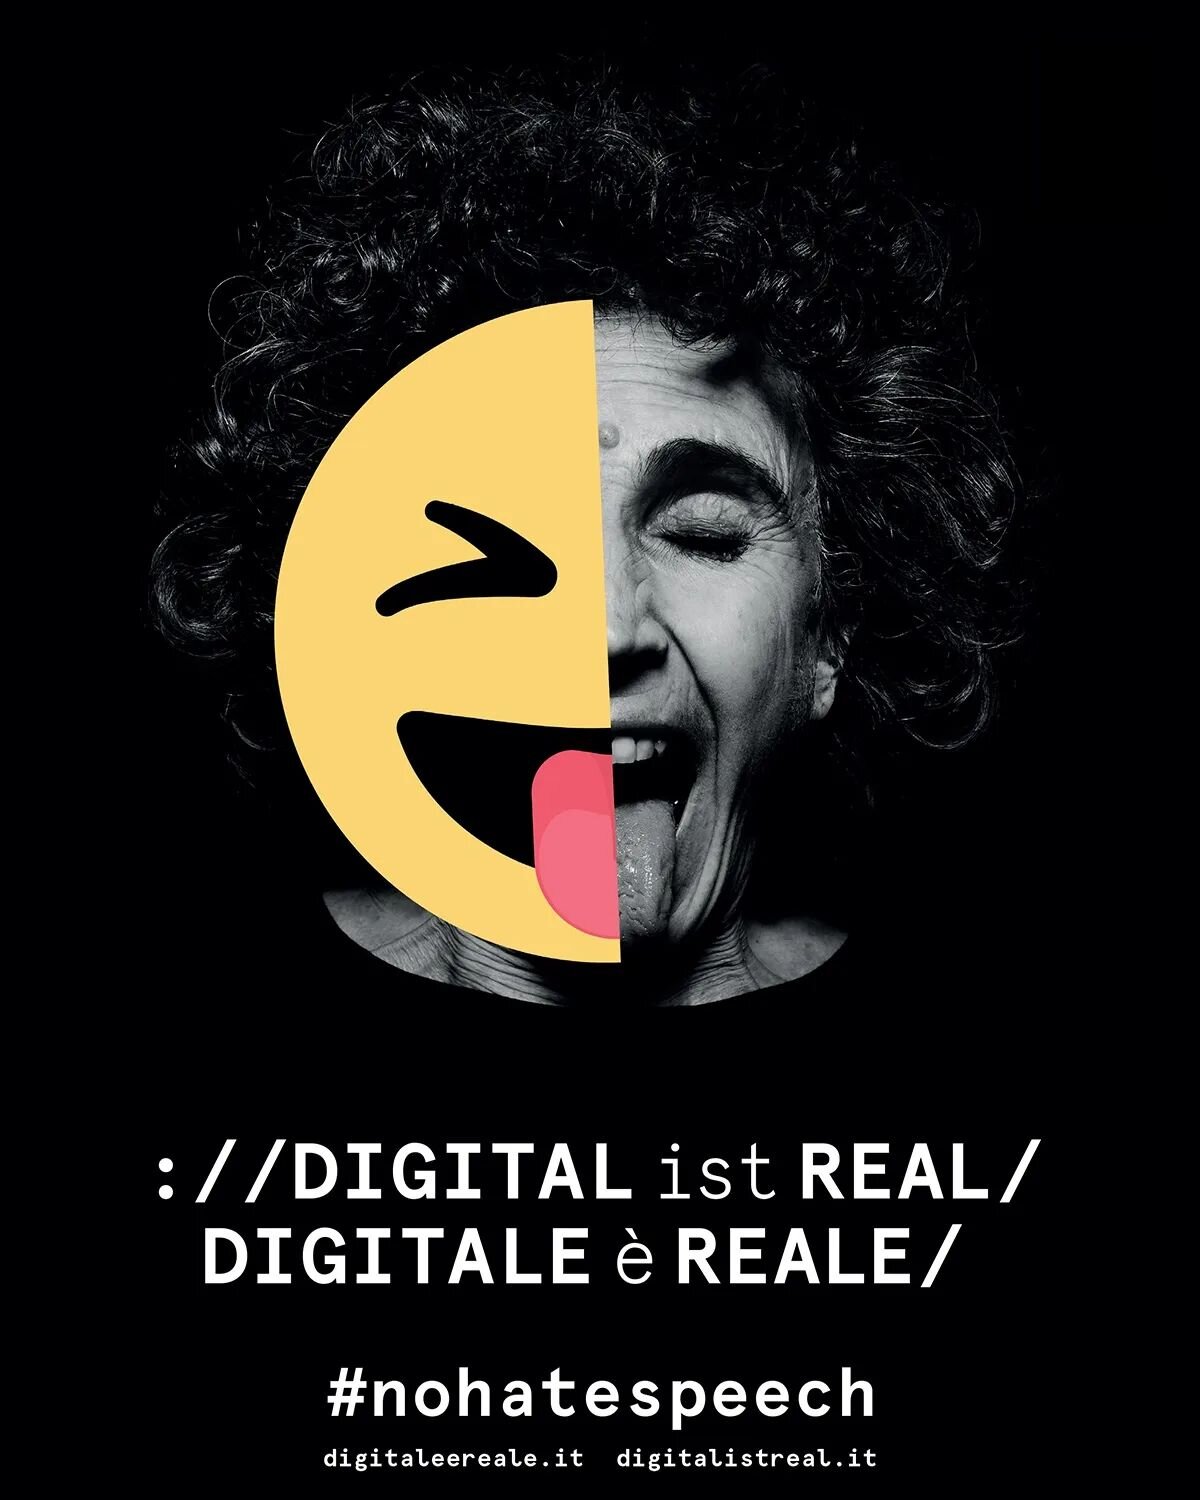 COMING SOON! 
🇩🇪 www.digitalistreal.it
🇮🇹 www.digitaleereale.it
❌ #nohatespeech 
#digitalisreal 
#digitalistreal 
#digitale&egrave;reale 
#stophatespeech 
#hatespeech #againsthate